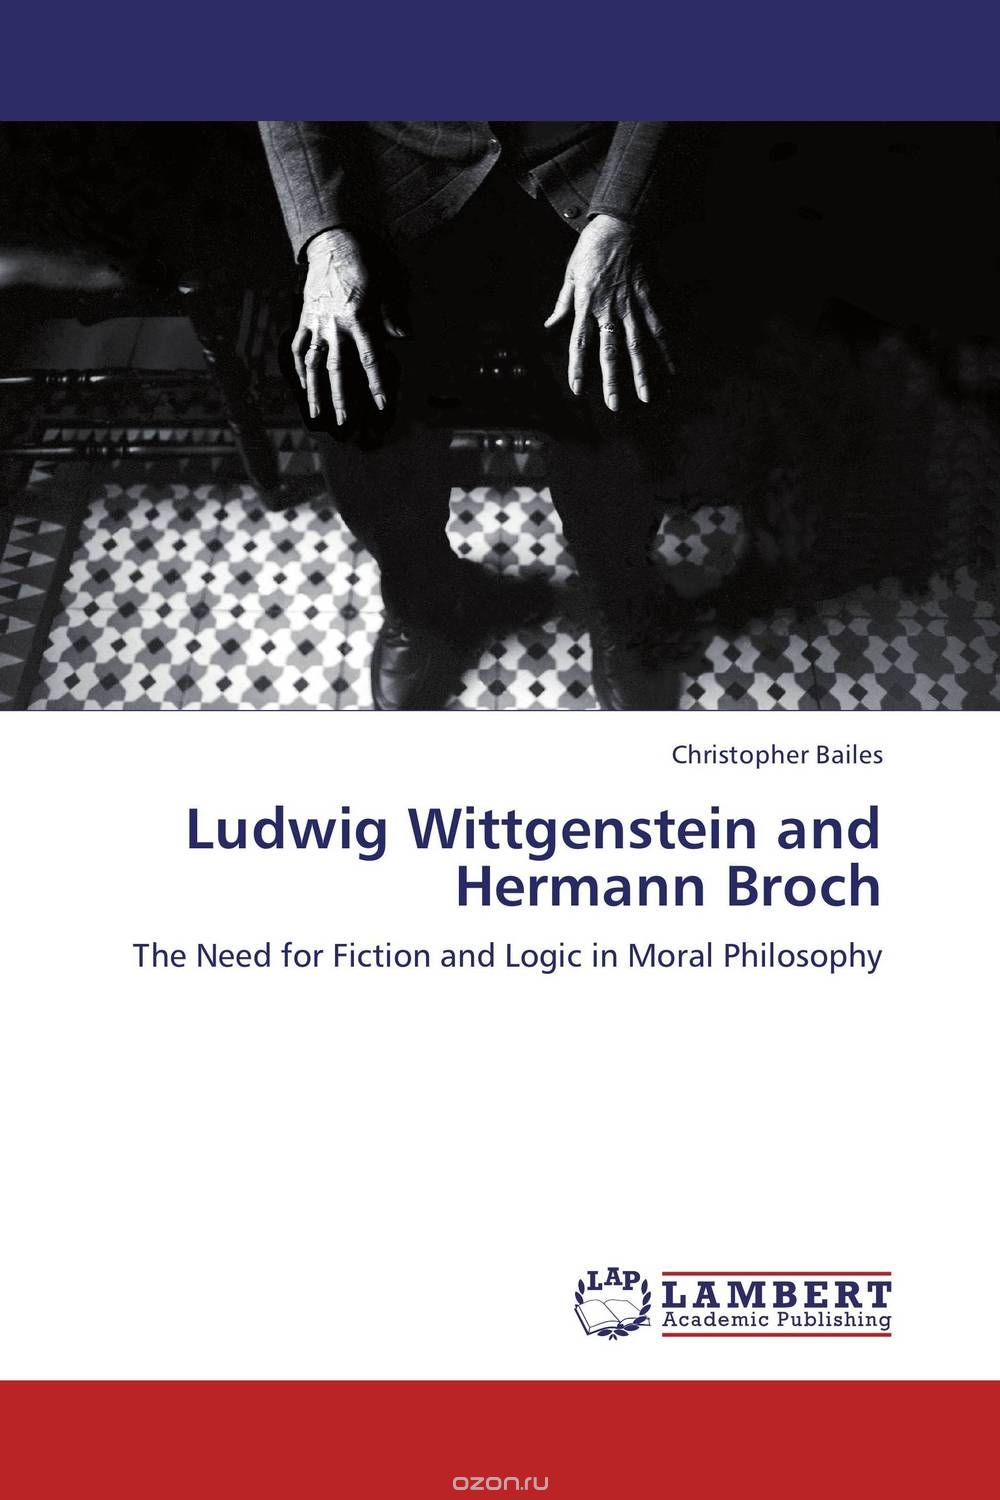 Скачать книгу "Ludwig Wittgenstein and Hermann Broch"